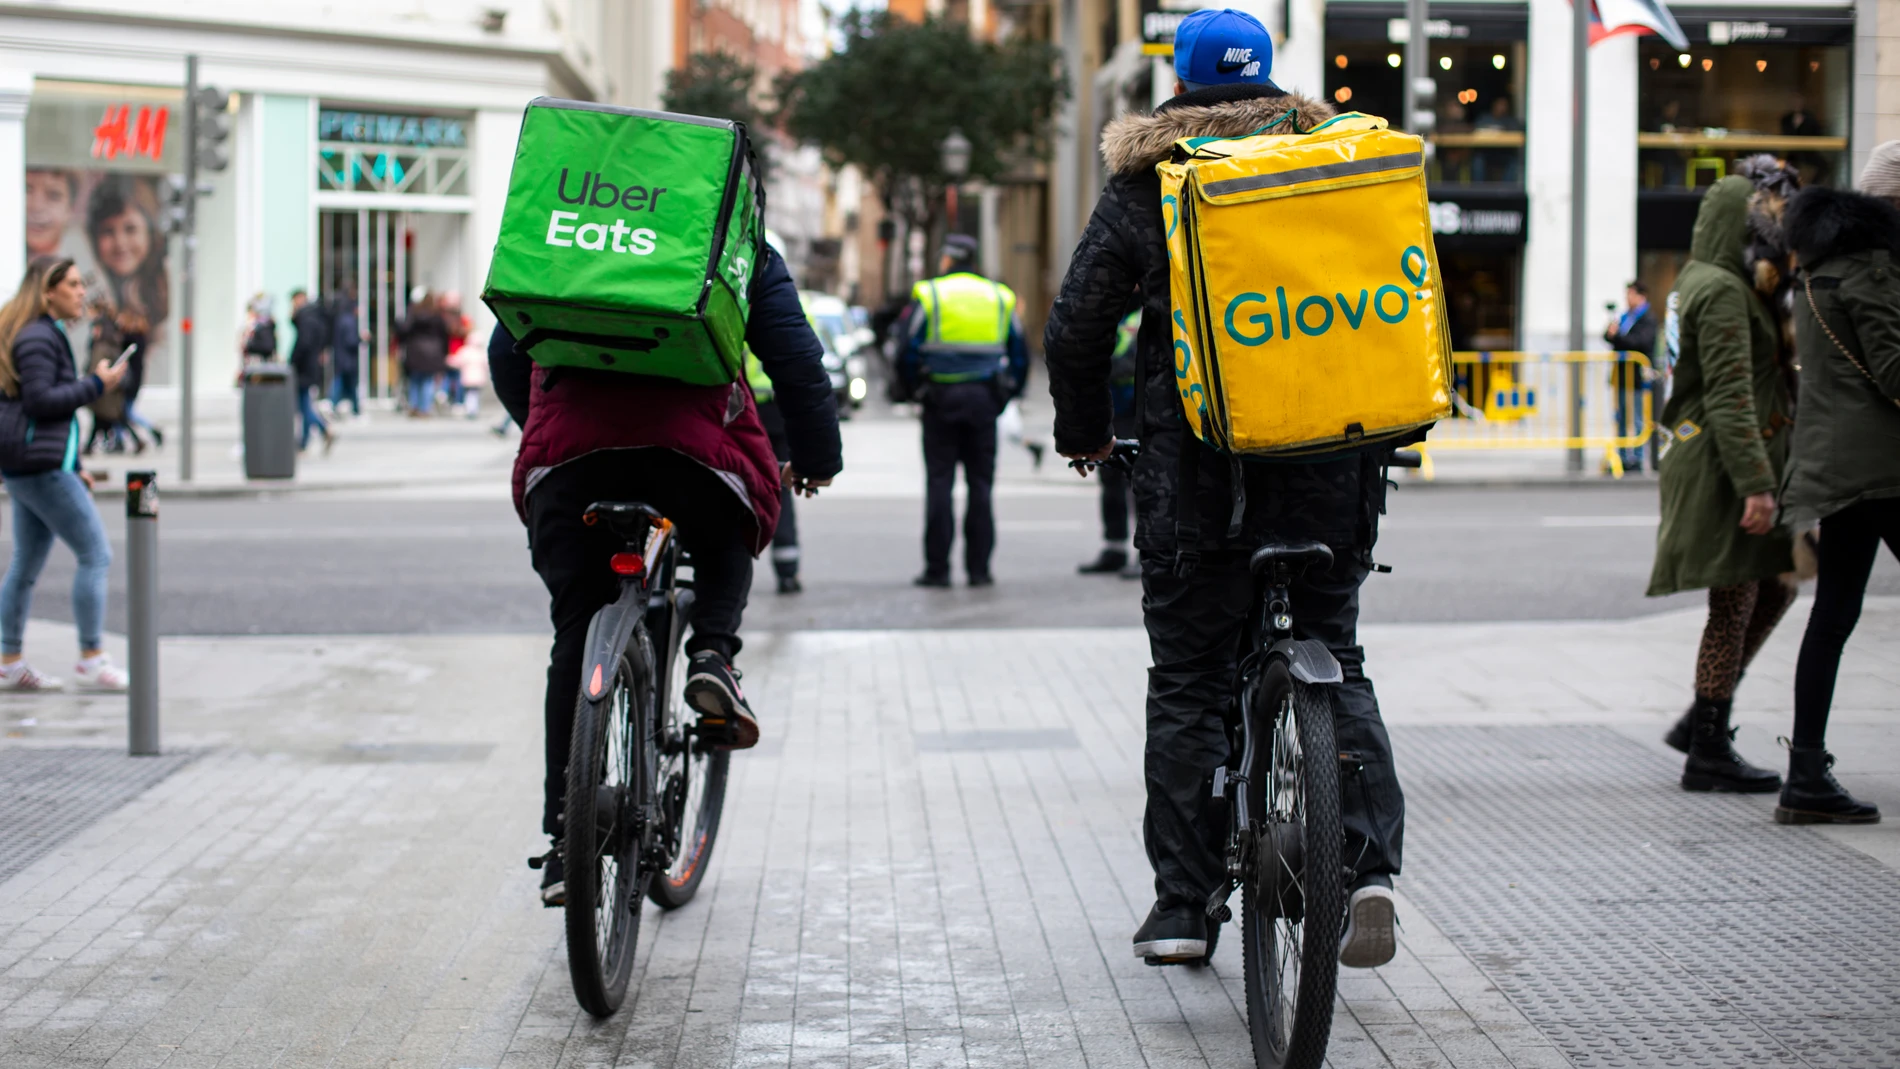 "Riders" de Uber y Glovo por el centro de Madrid